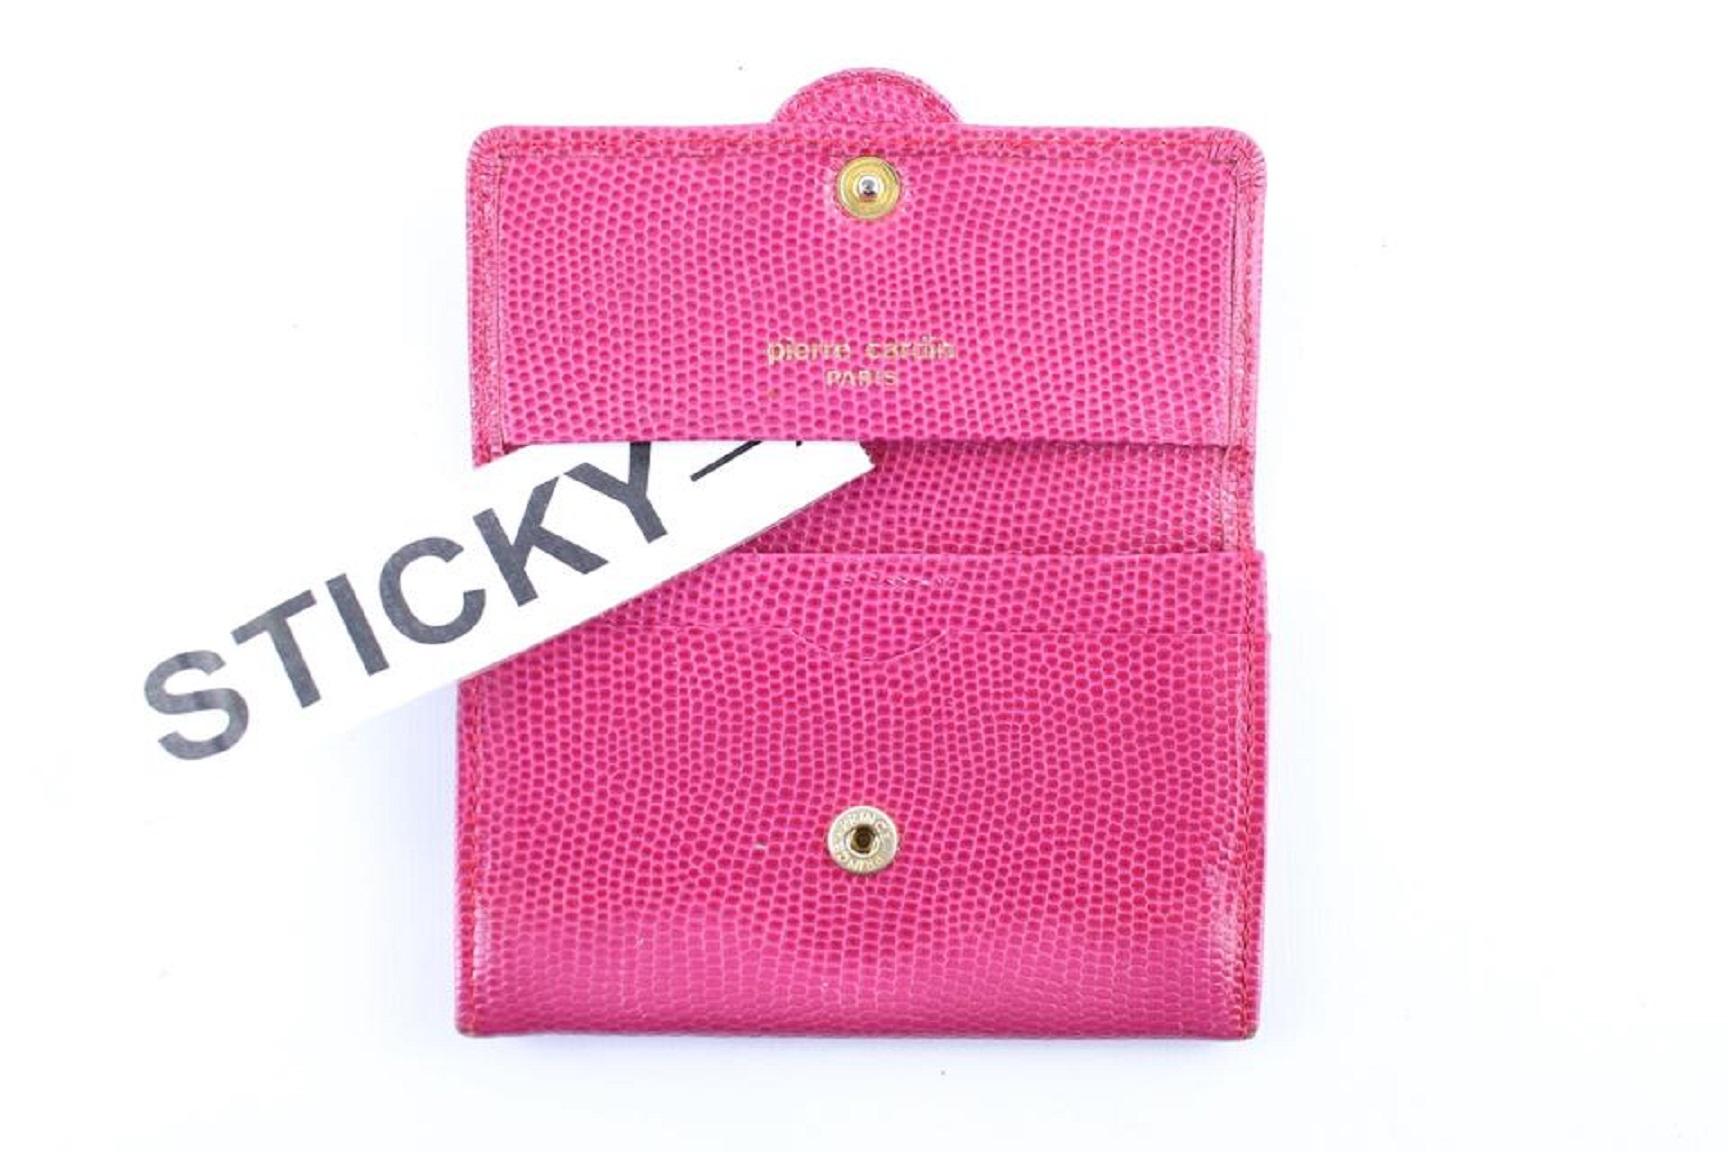 Pierre Cardin Card Wallet 7mr0115 Pink Clutch For Sale 6